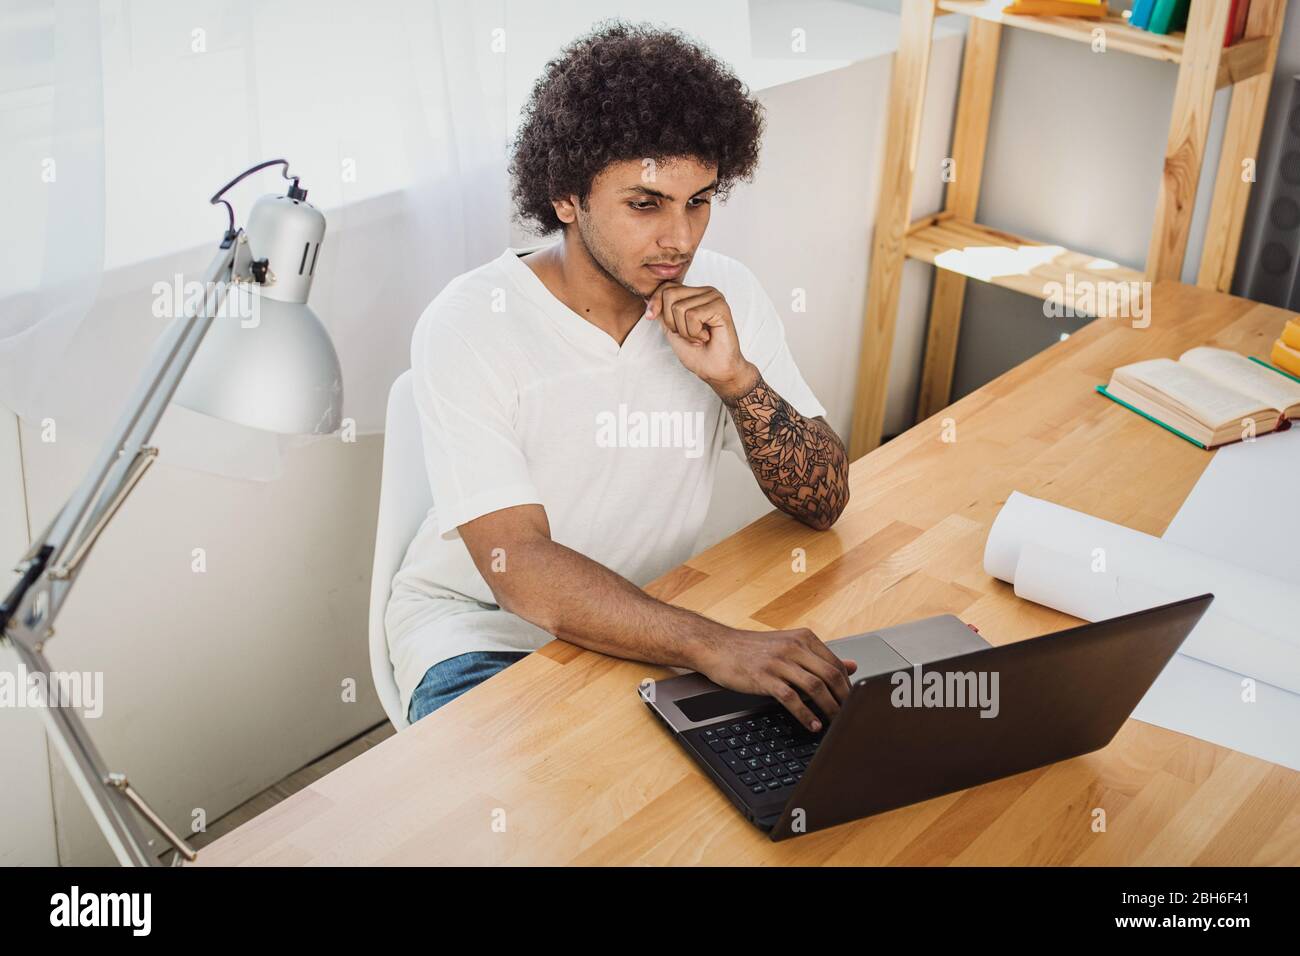 Lernen Sie zu Hause auf dem Laptop. Attraktiver Mann konzentrierte sich auf den Laptop und denken. Stockfoto